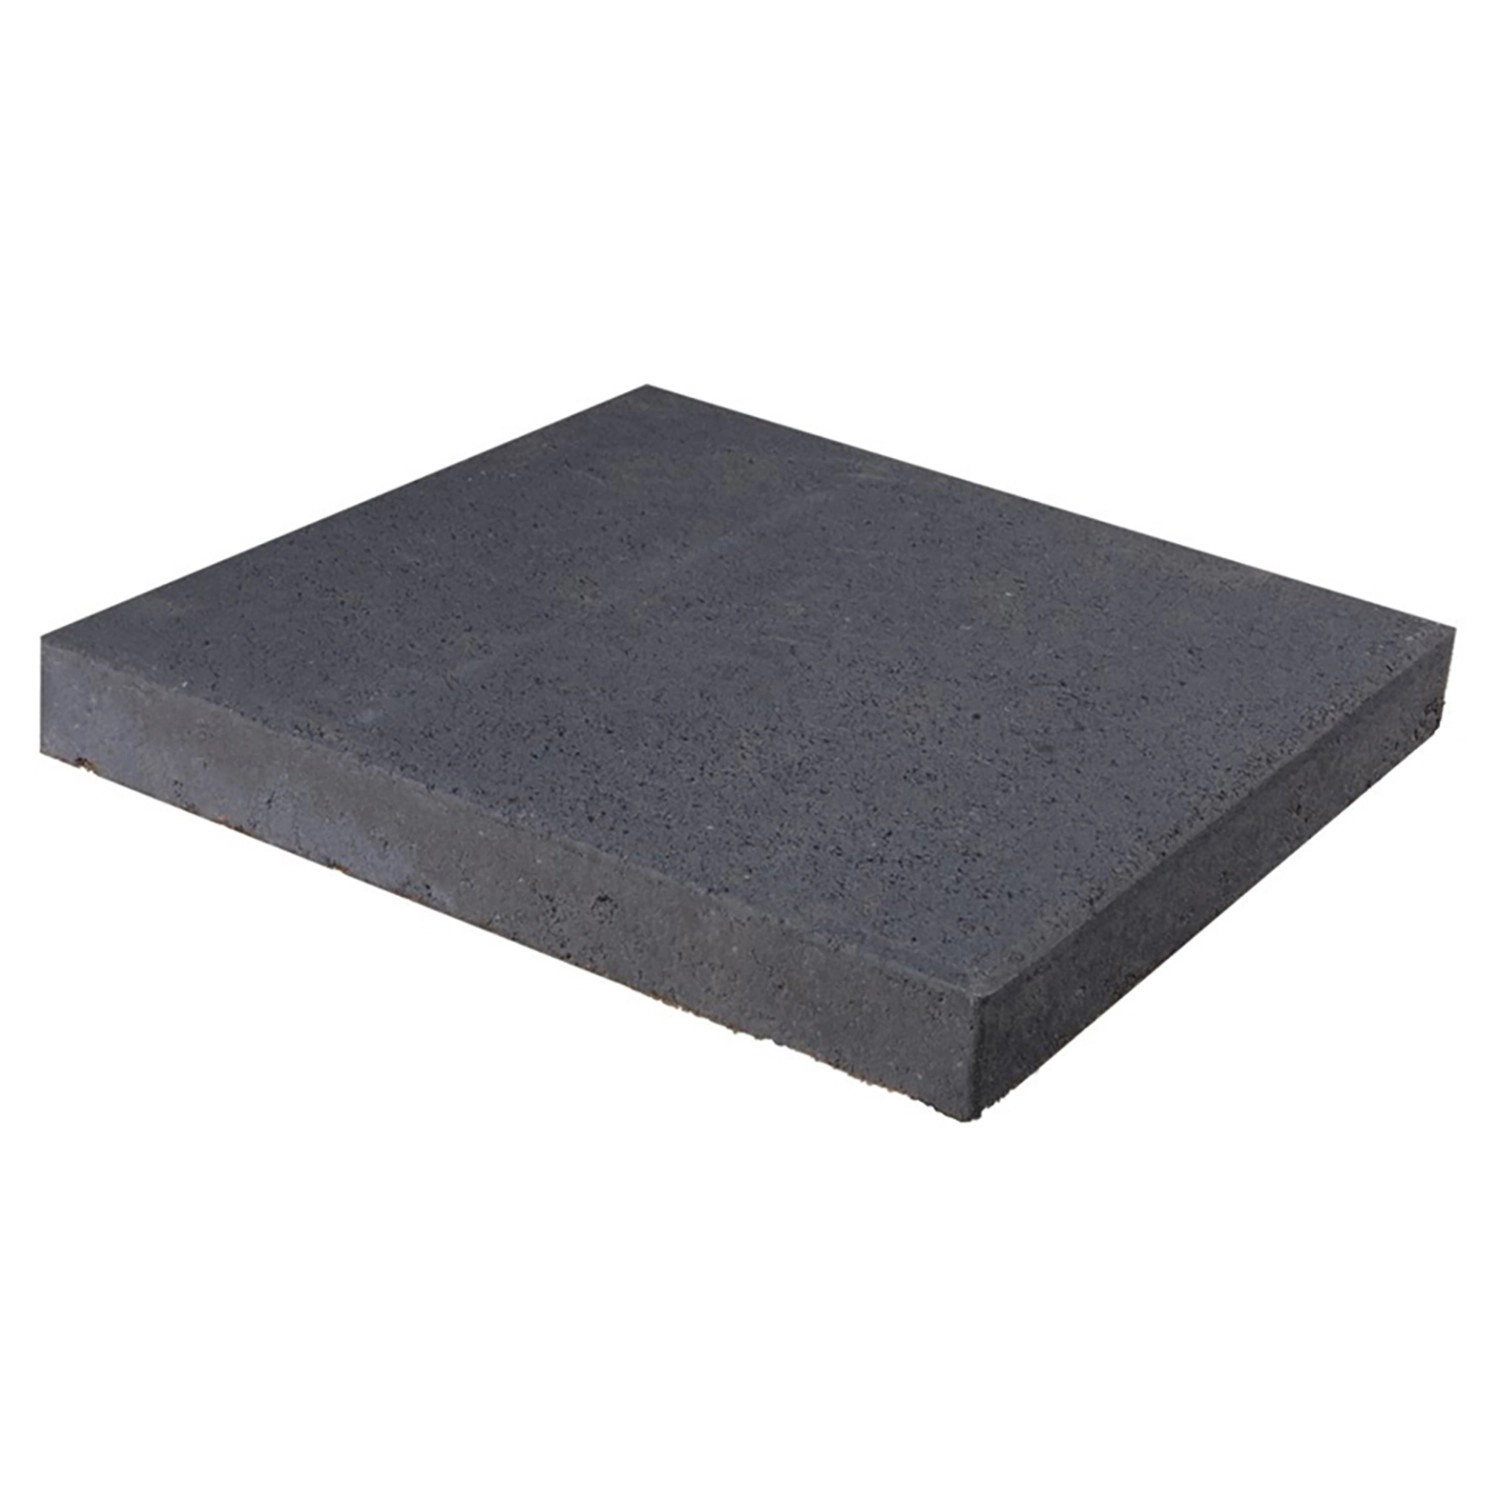 Terrasoft Kunstrasenplatte aus Gummigranulat 50 x 50 cm Grün kaufen bei OBI